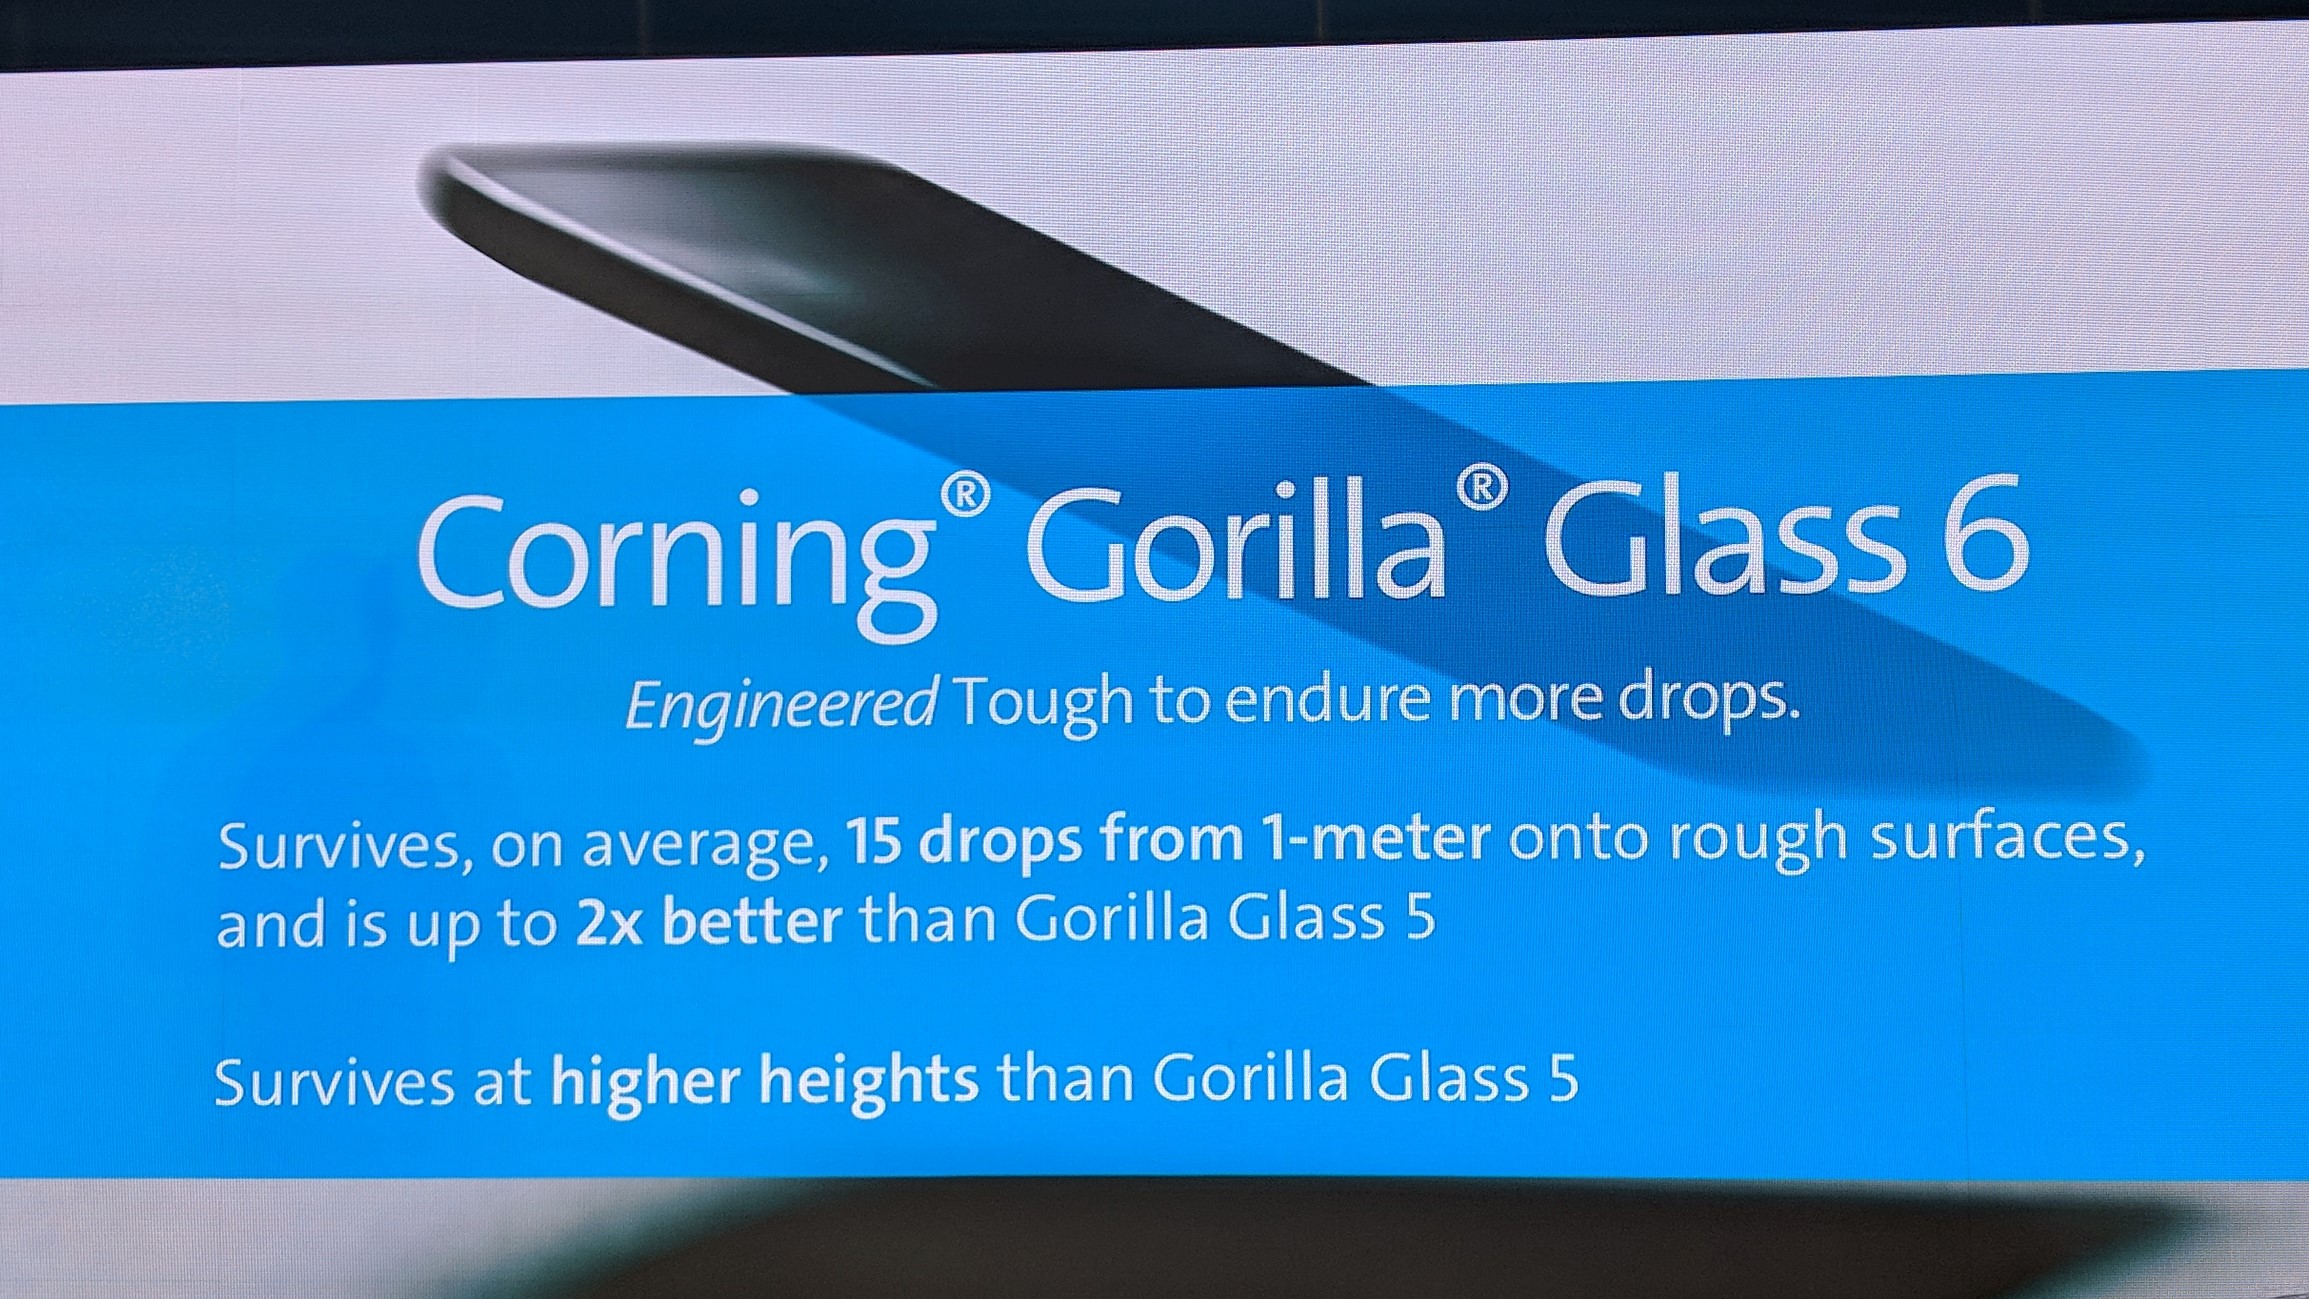 Corning Gorilla Glass 6